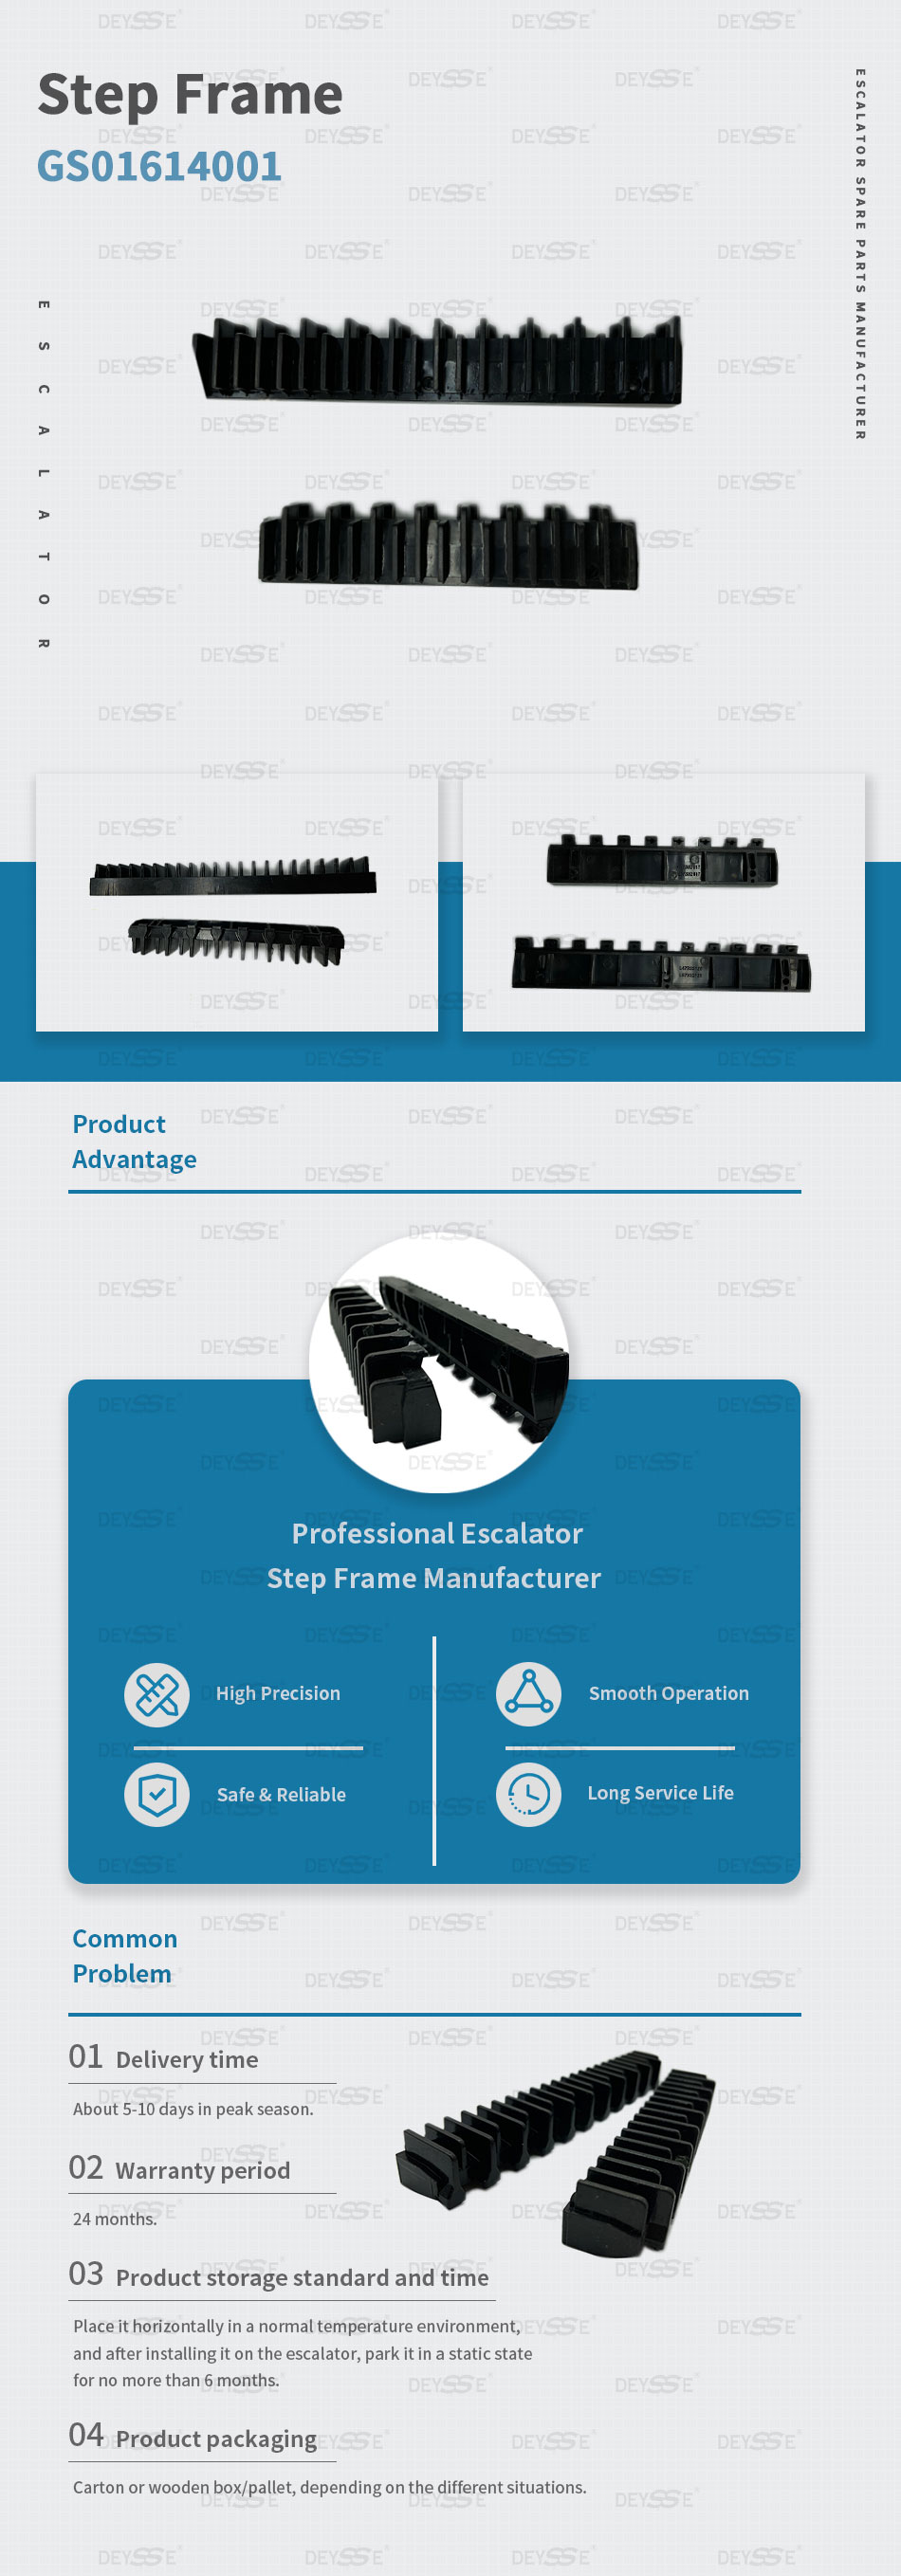 Escalator Black demarcation for Escalator Steps 800mm TJ800SX-F Escalator Step Frame